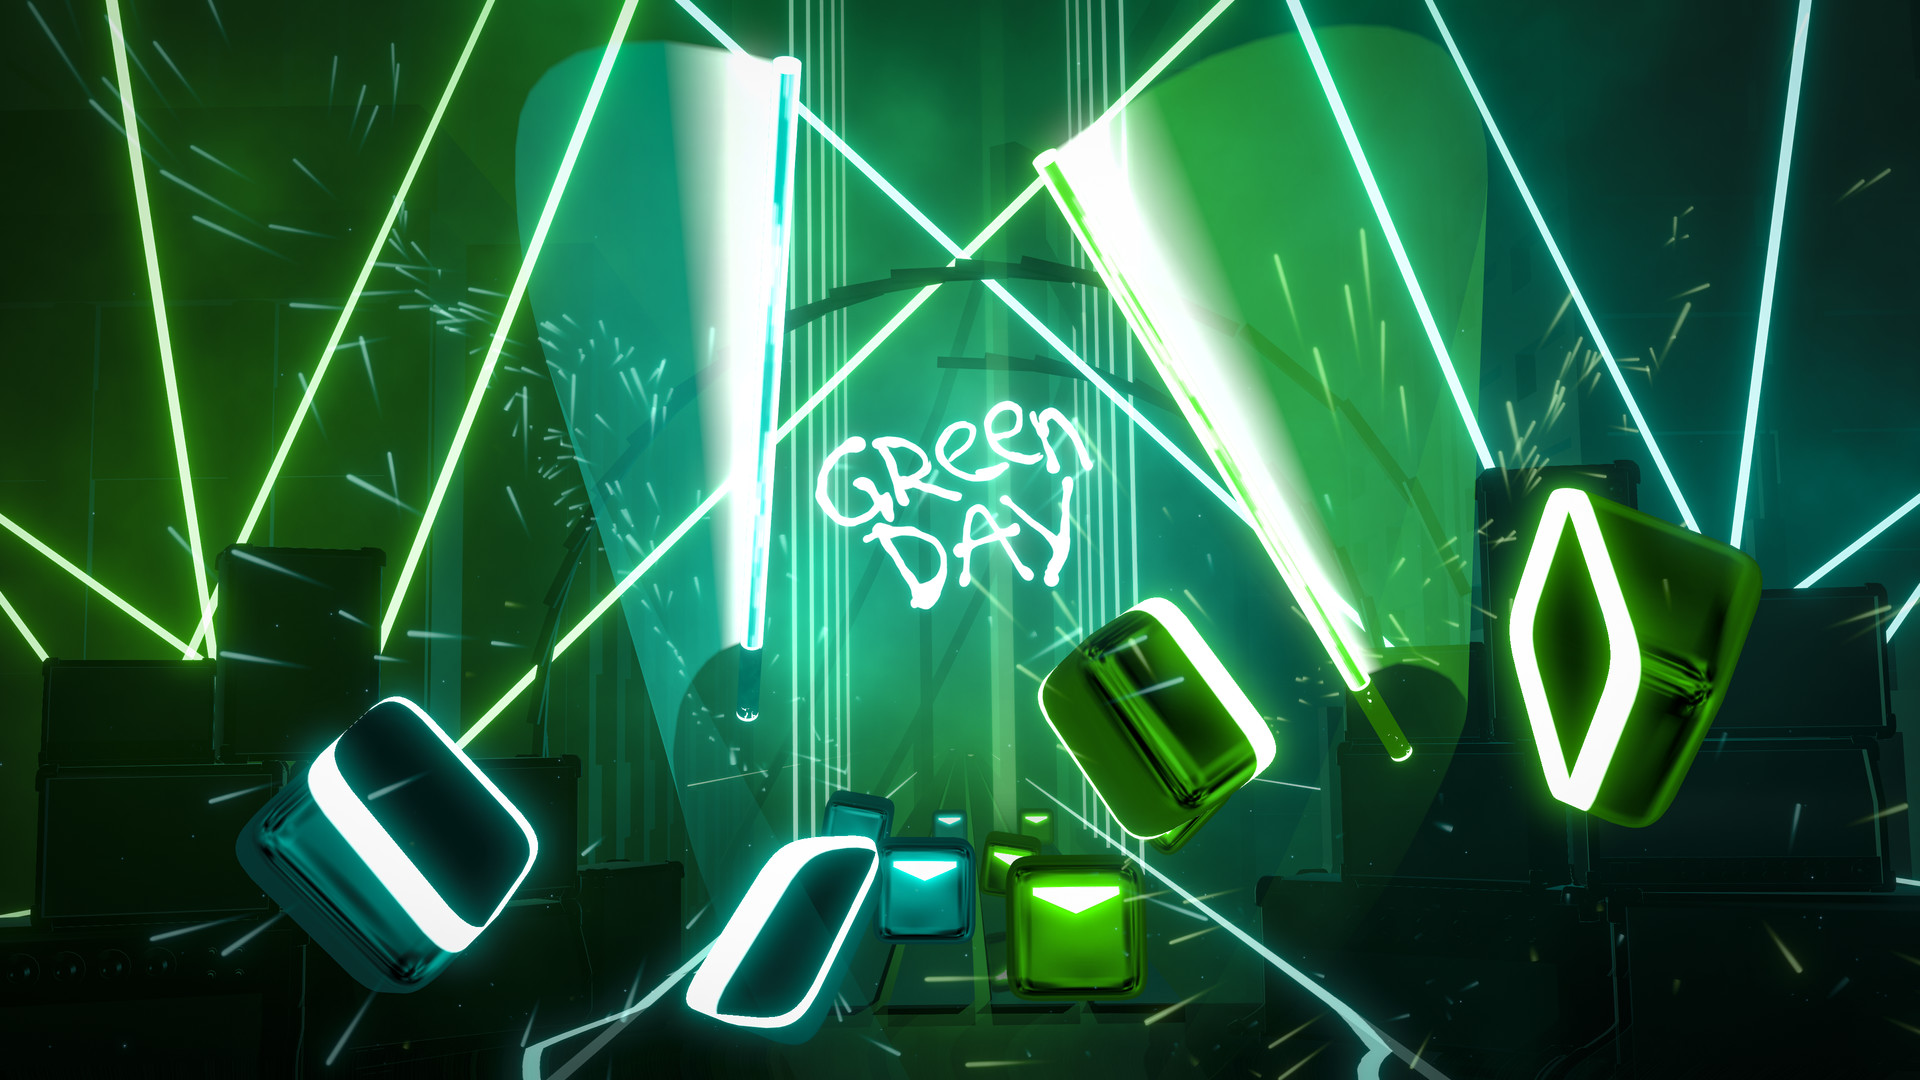 Beat Saber - Green Day - "Boulevard Of Broken Dreams" Featured Screenshot #1